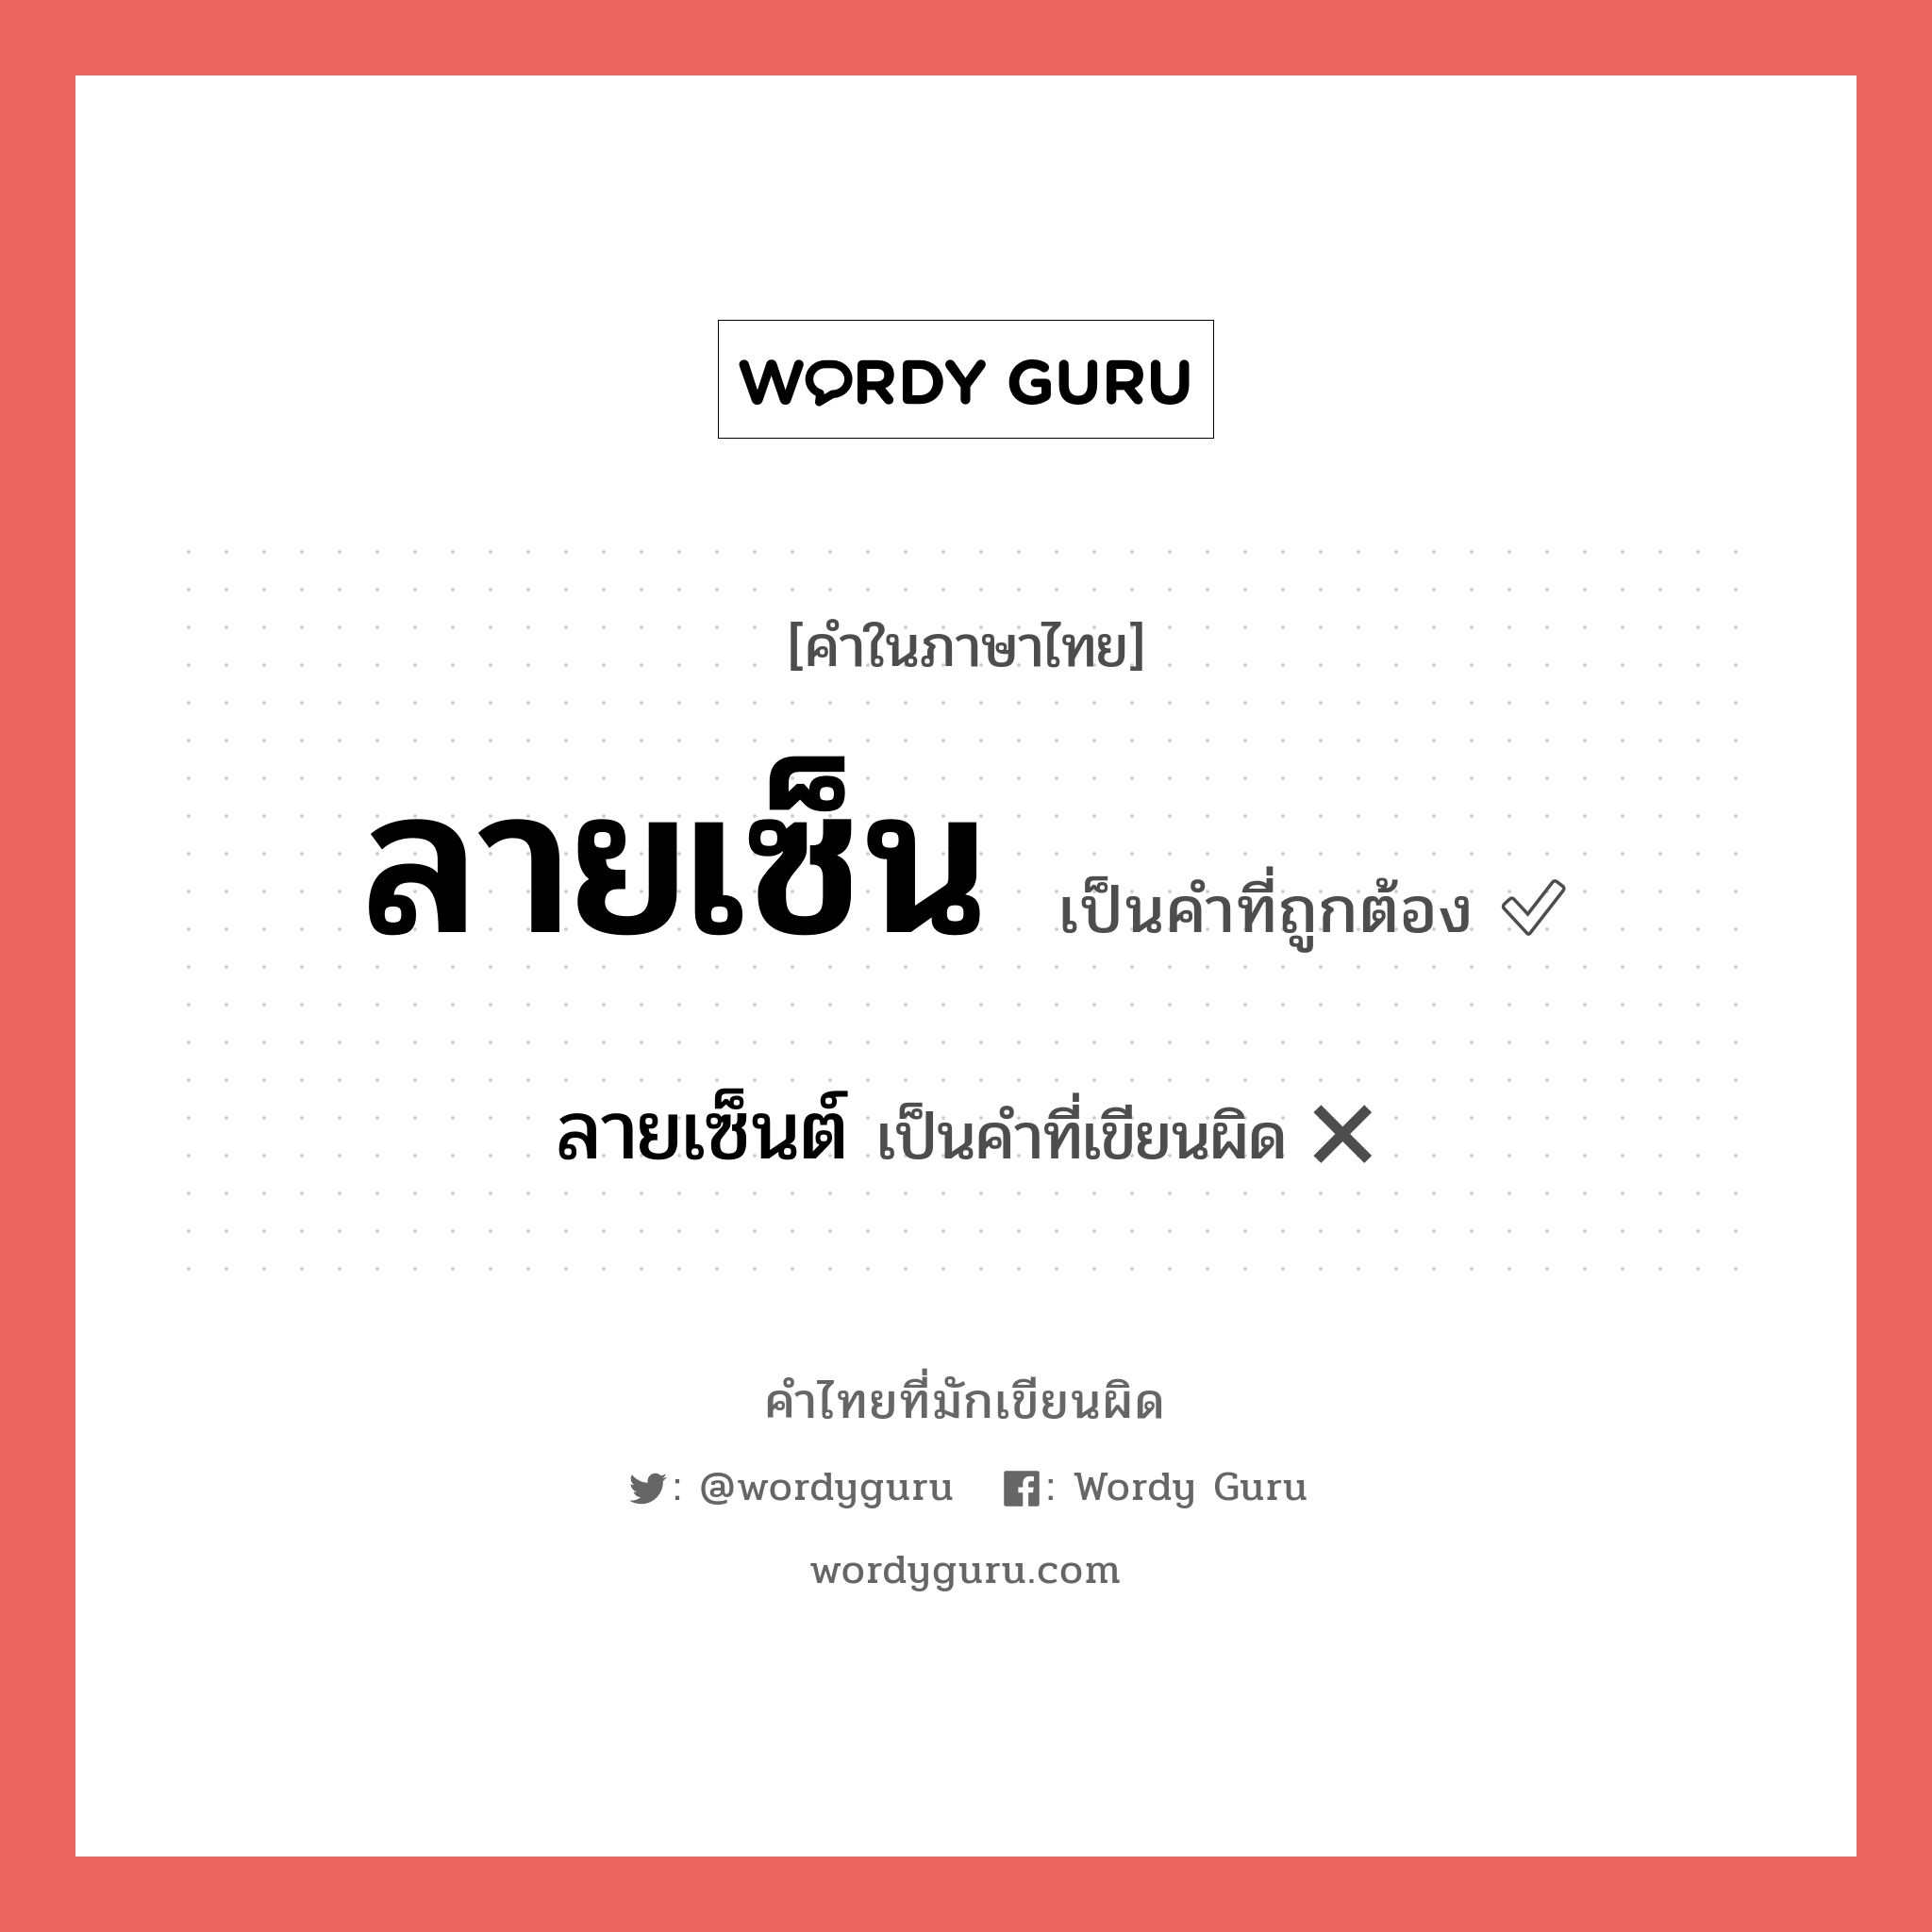 ลายเซ็นต์ หรือ ลายเซ็น คำไหนเขียนถูก?, คำในภาษาไทยที่มักเขียนผิด ลายเซ็นต์ คำที่ผิด ❌ ลายเซ็น